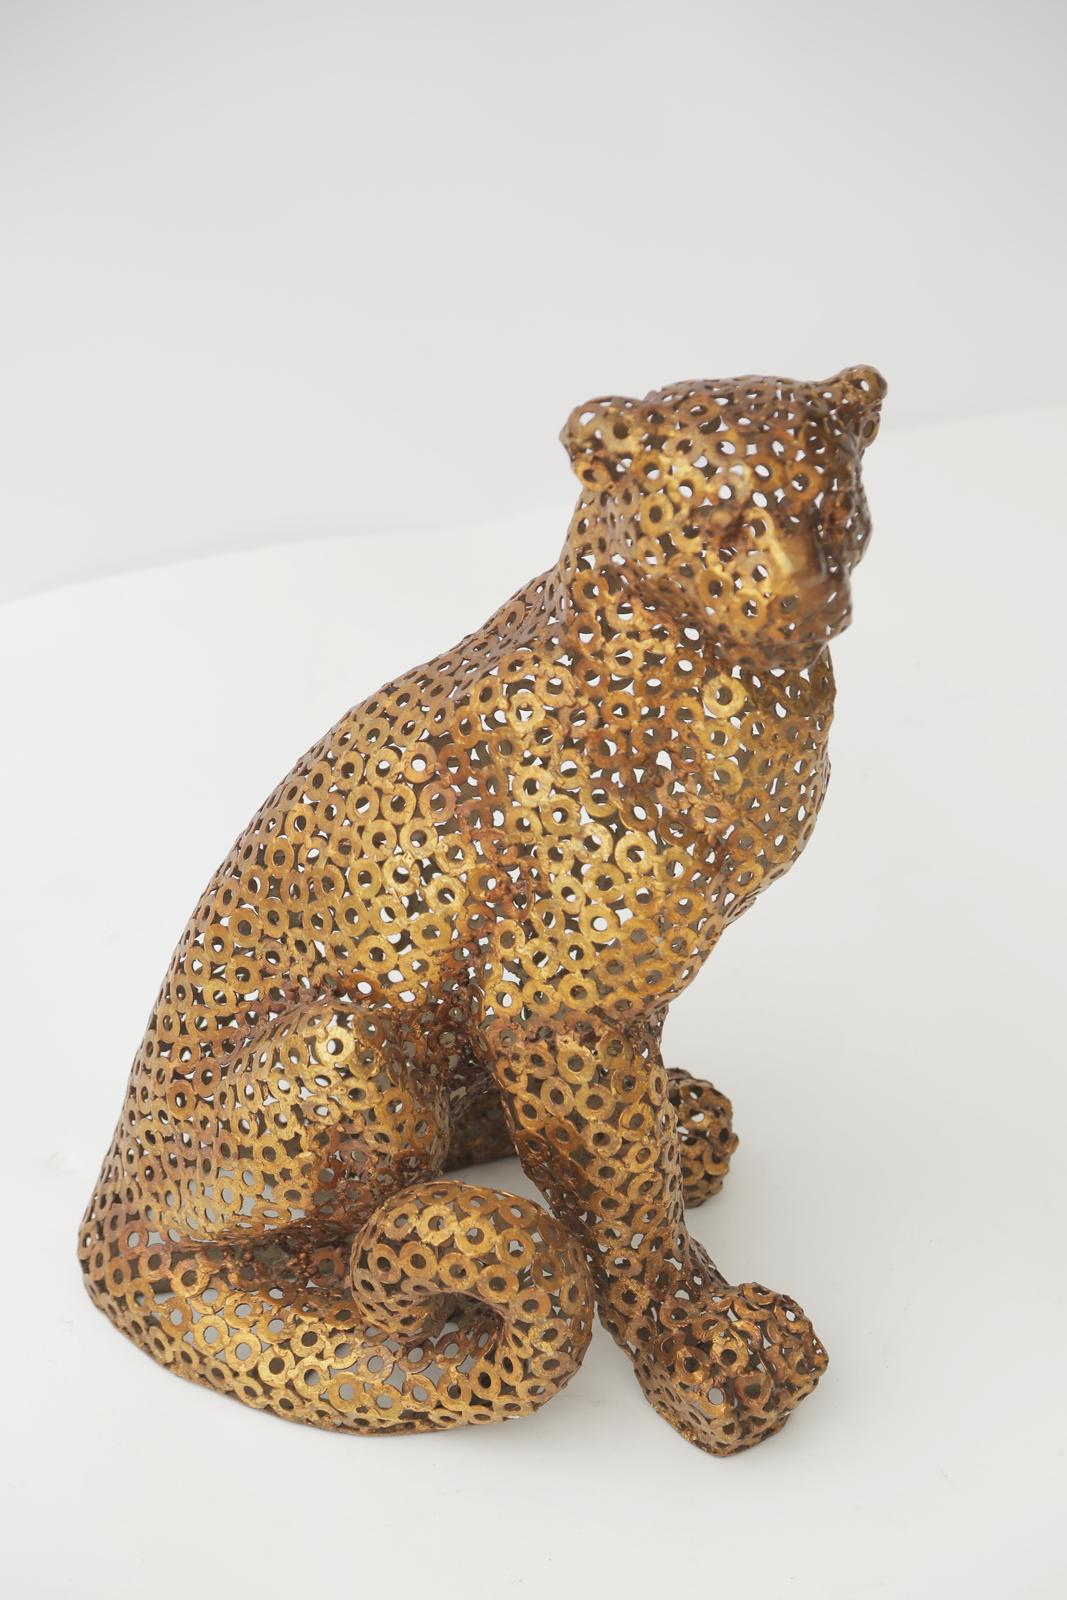 Sculpture très inhabituelle d'un léopard, minutieusement formé par le soudage de rondelles d'acier dans sa pose assise exquise, avec une finition dorée. 

Stock ID : D3177.